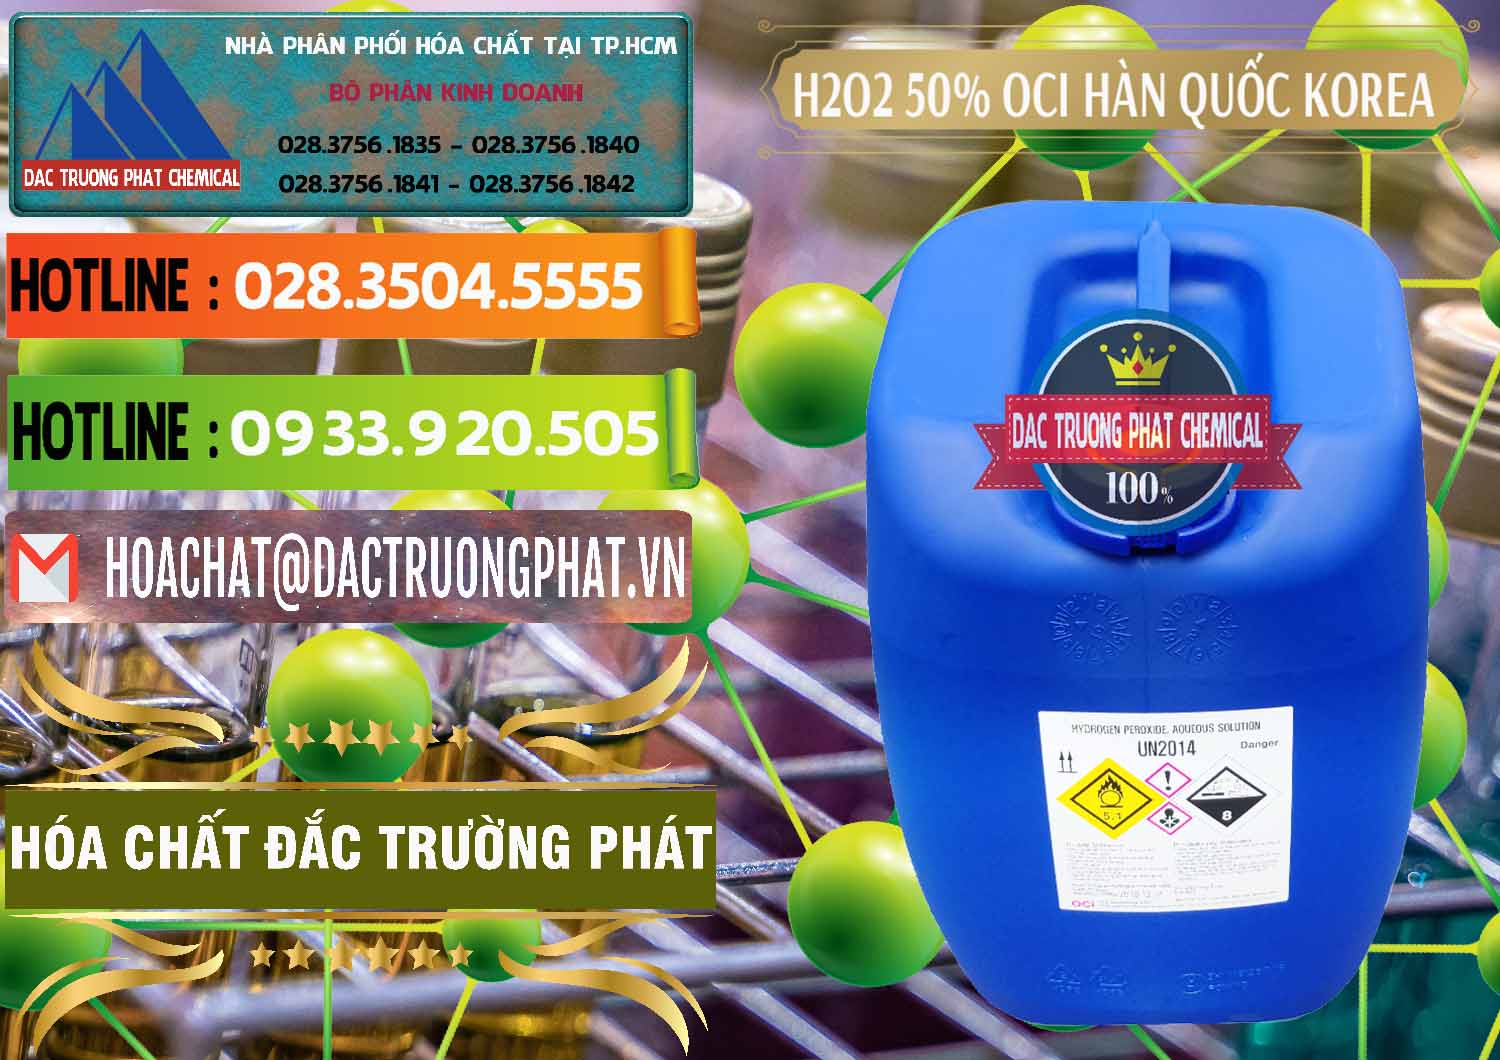 Nơi bán _ cung ứng H2O2 - Hydrogen Peroxide 50% OCI Hàn Quốc Korea - 0075 - Cty chuyên cung cấp _ kinh doanh hóa chất tại TP.HCM - cungcaphoachat.com.vn